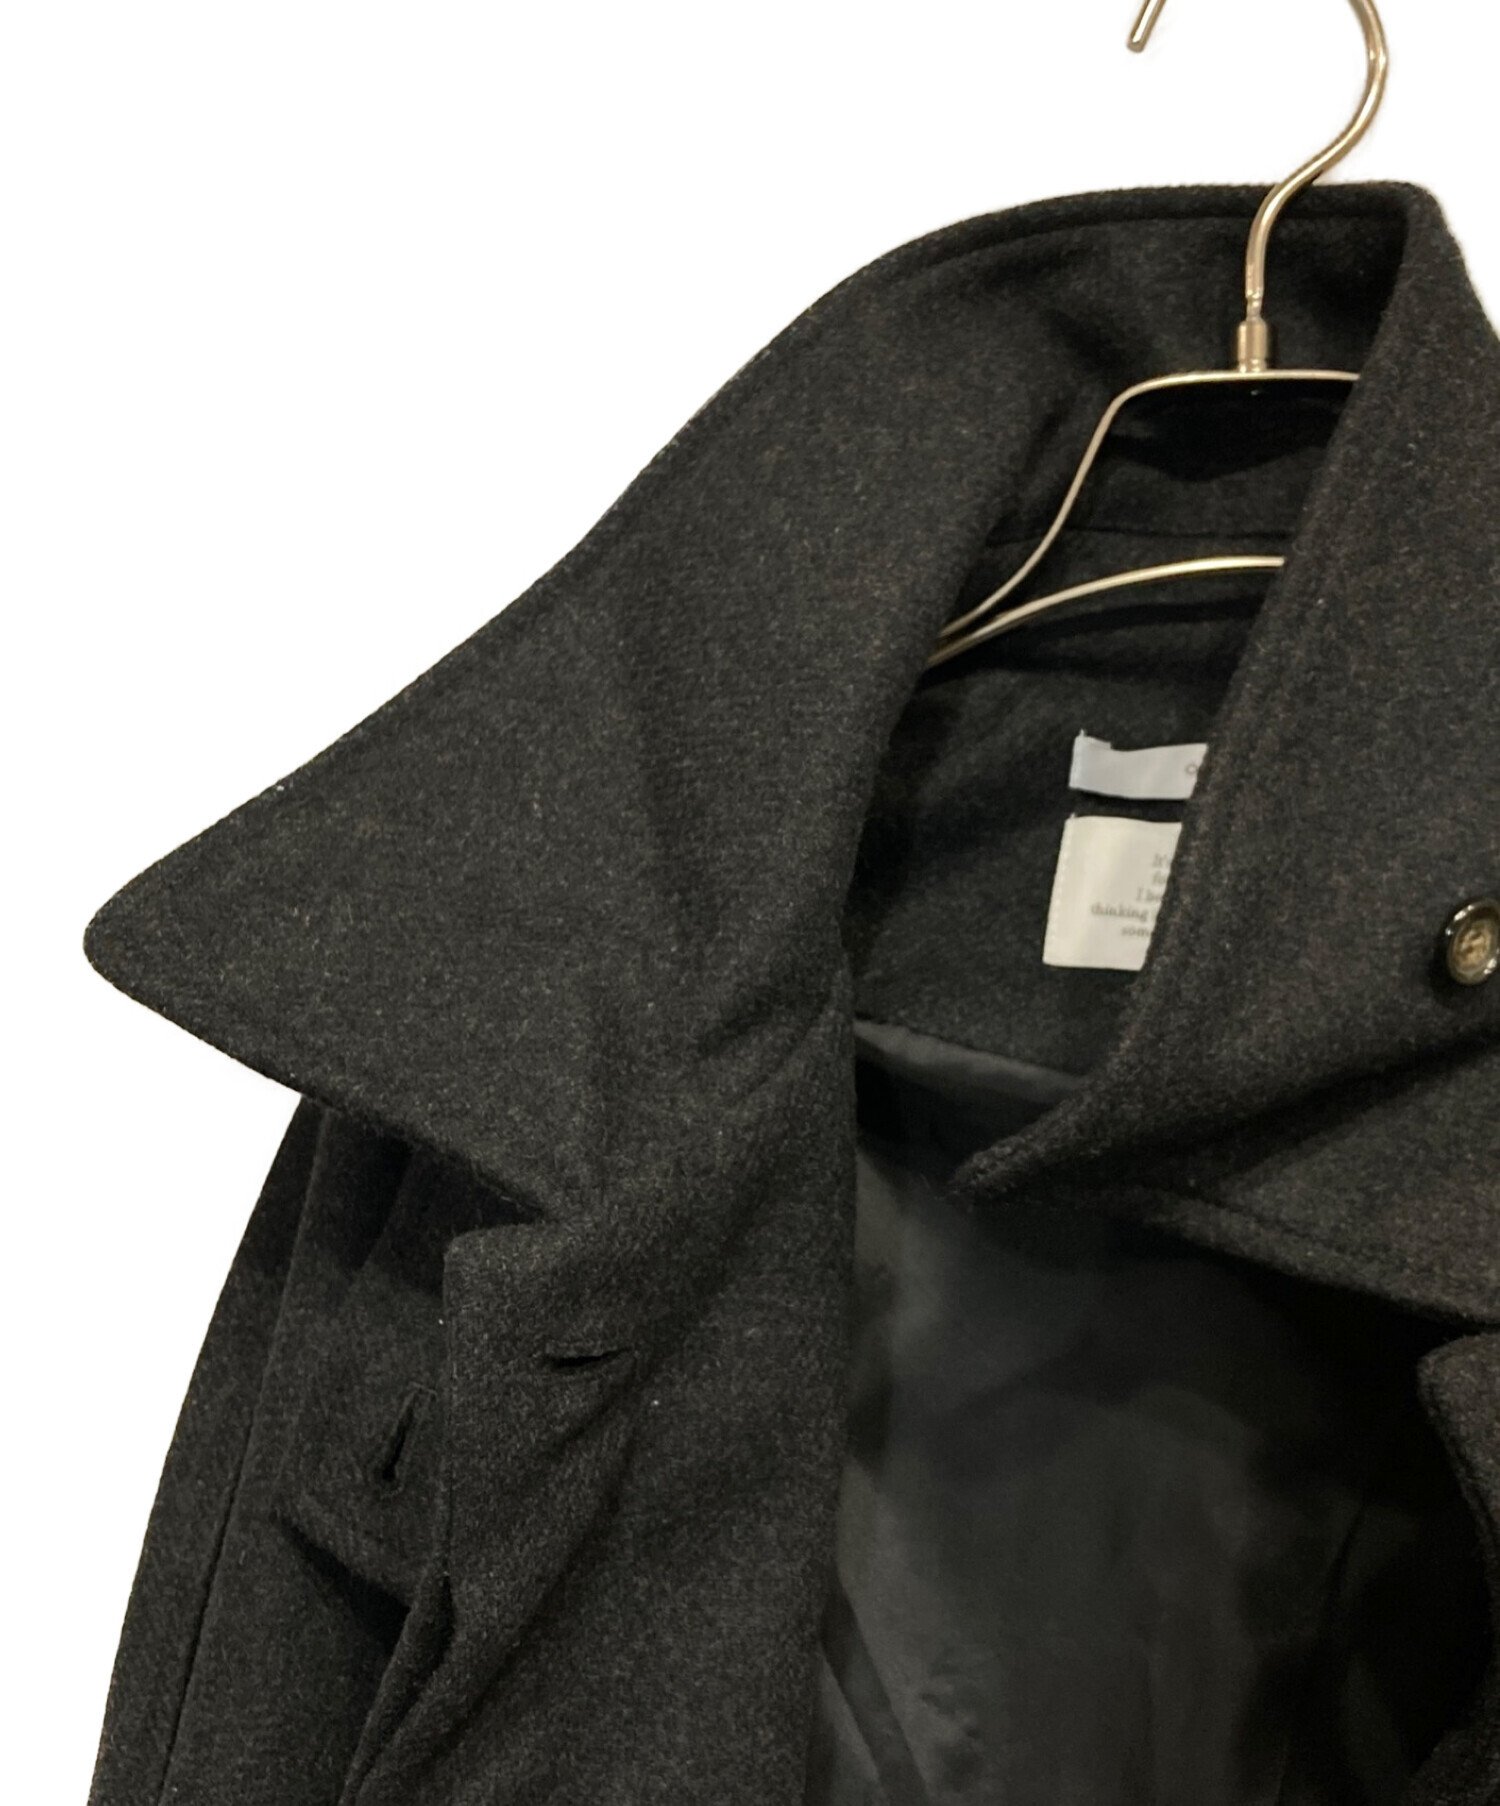 OHOTORO (オオトロ) Dublin Coat ステンカラーコート グレー サイズ:サイズ表記なし